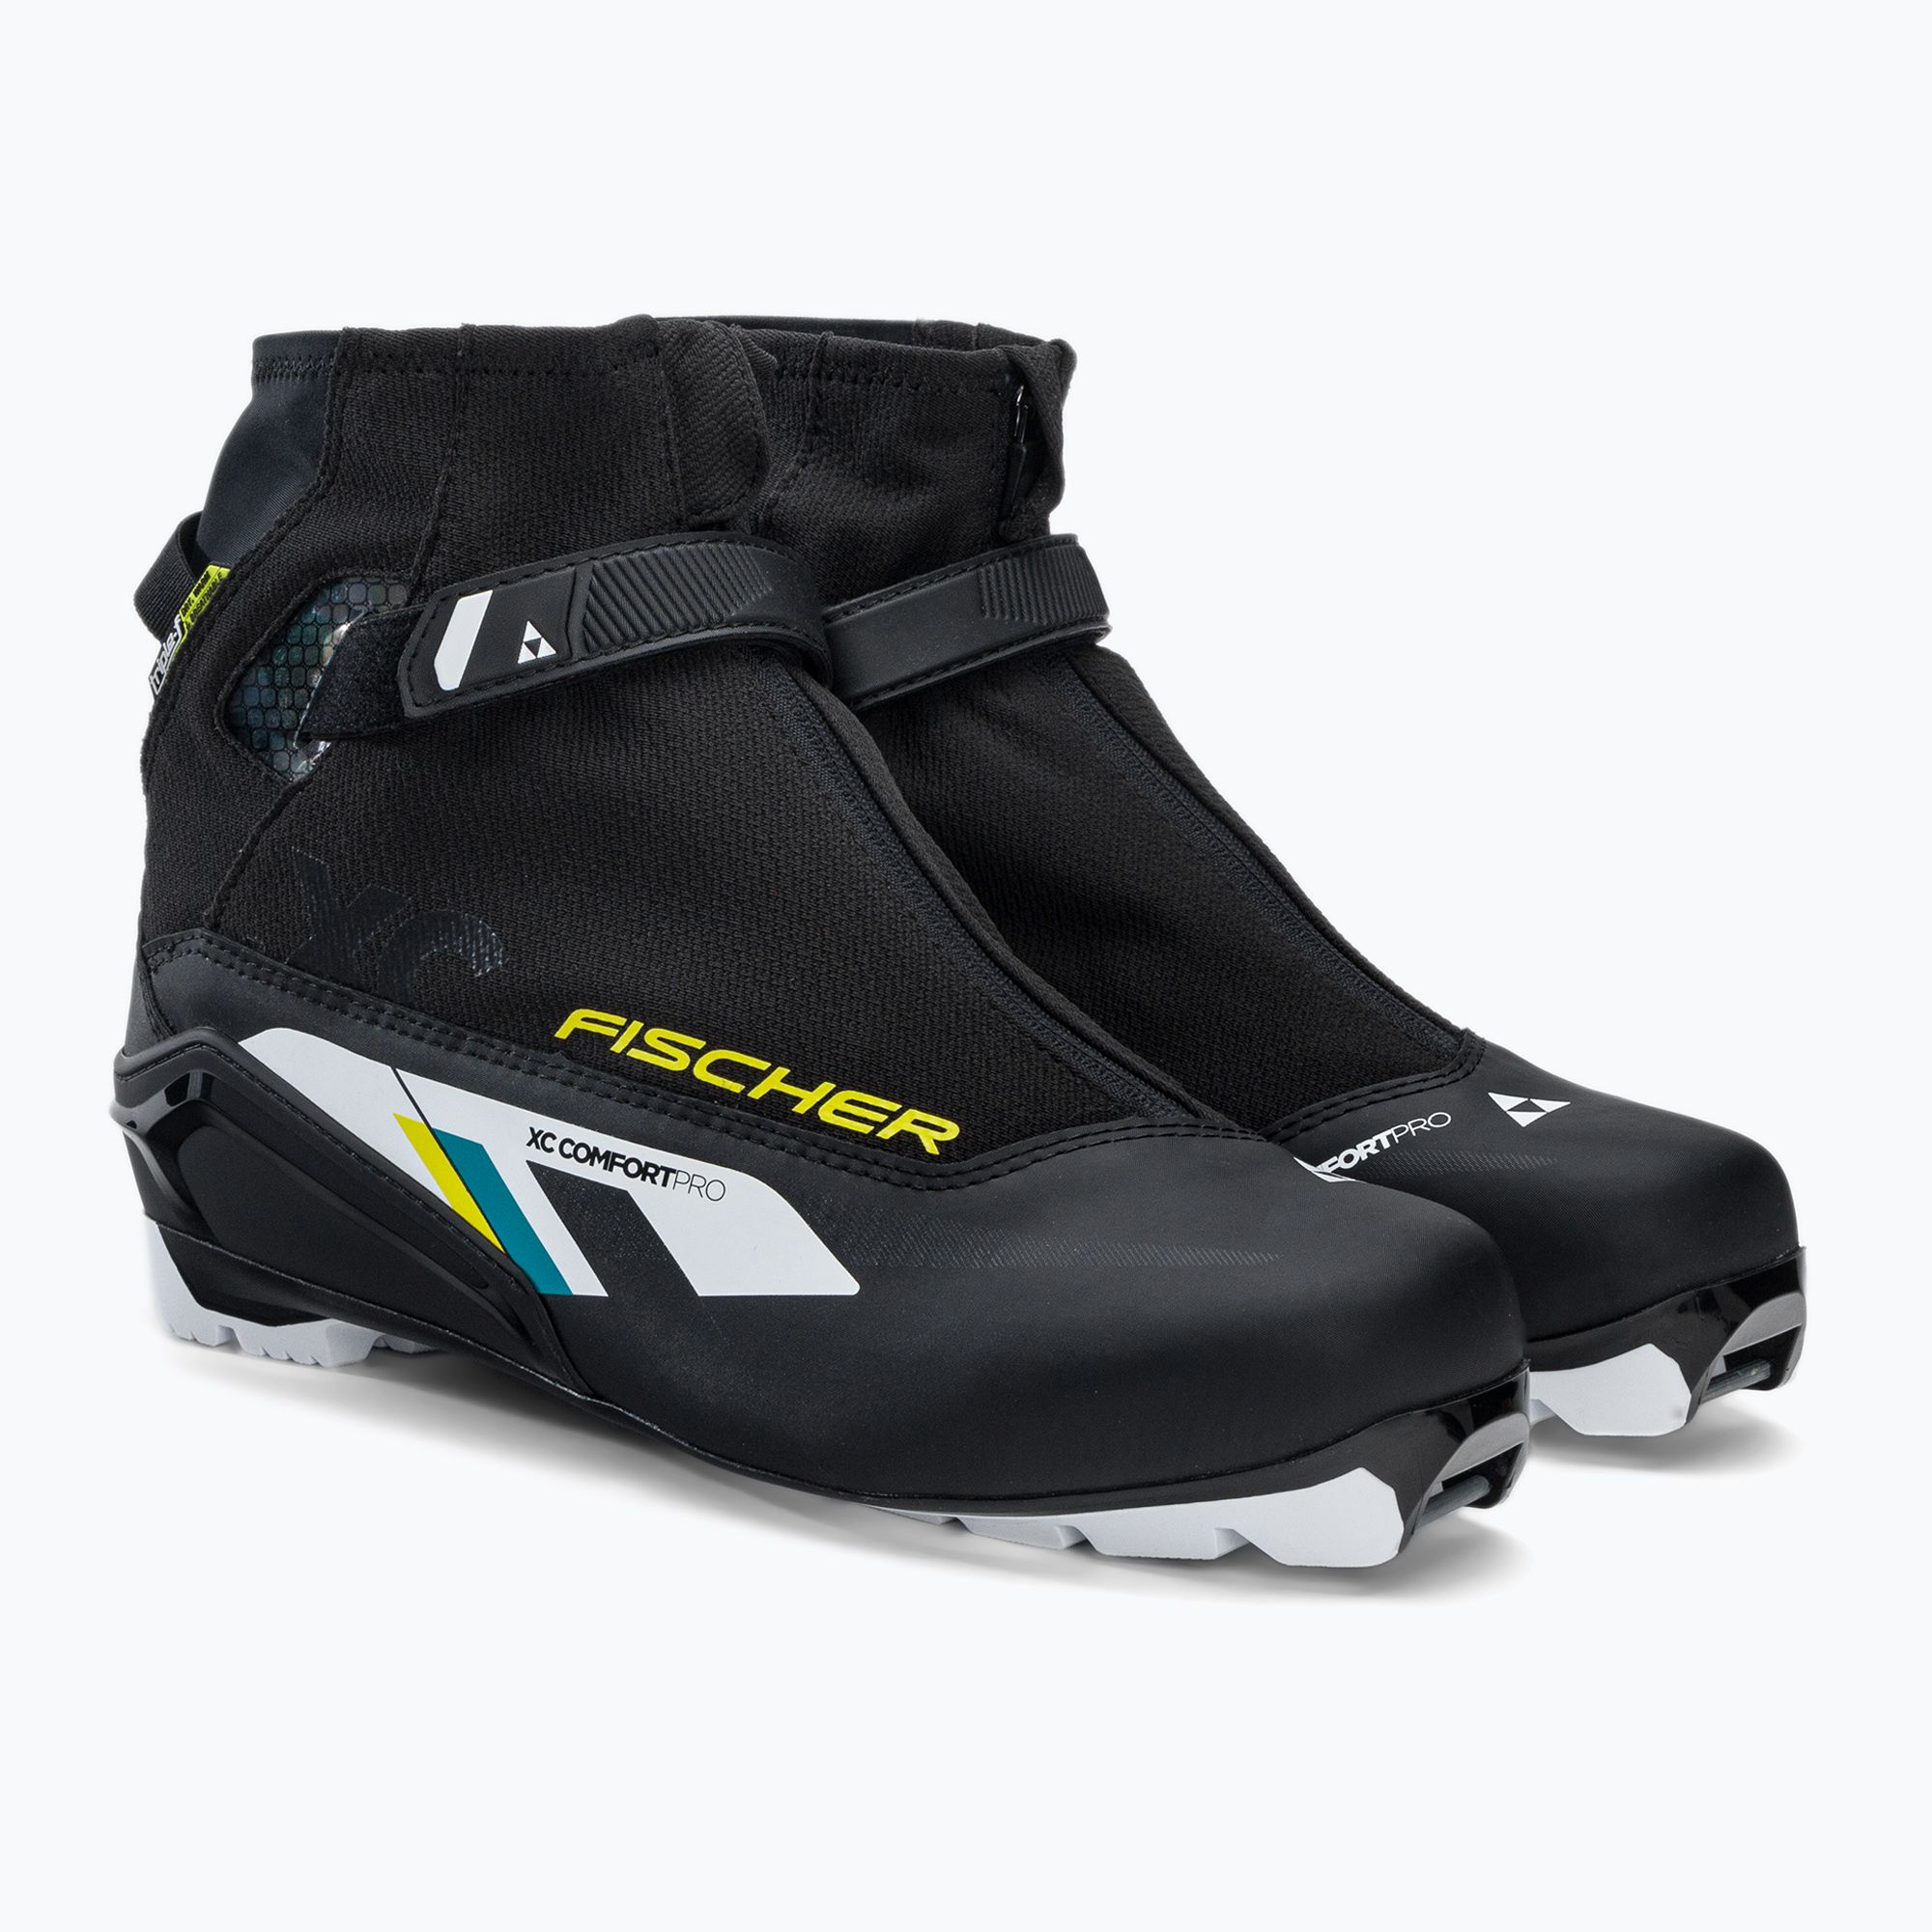 Buty do nart biegowych Fischer XC Comfort Pro black/yellow zdjęcie nr 4